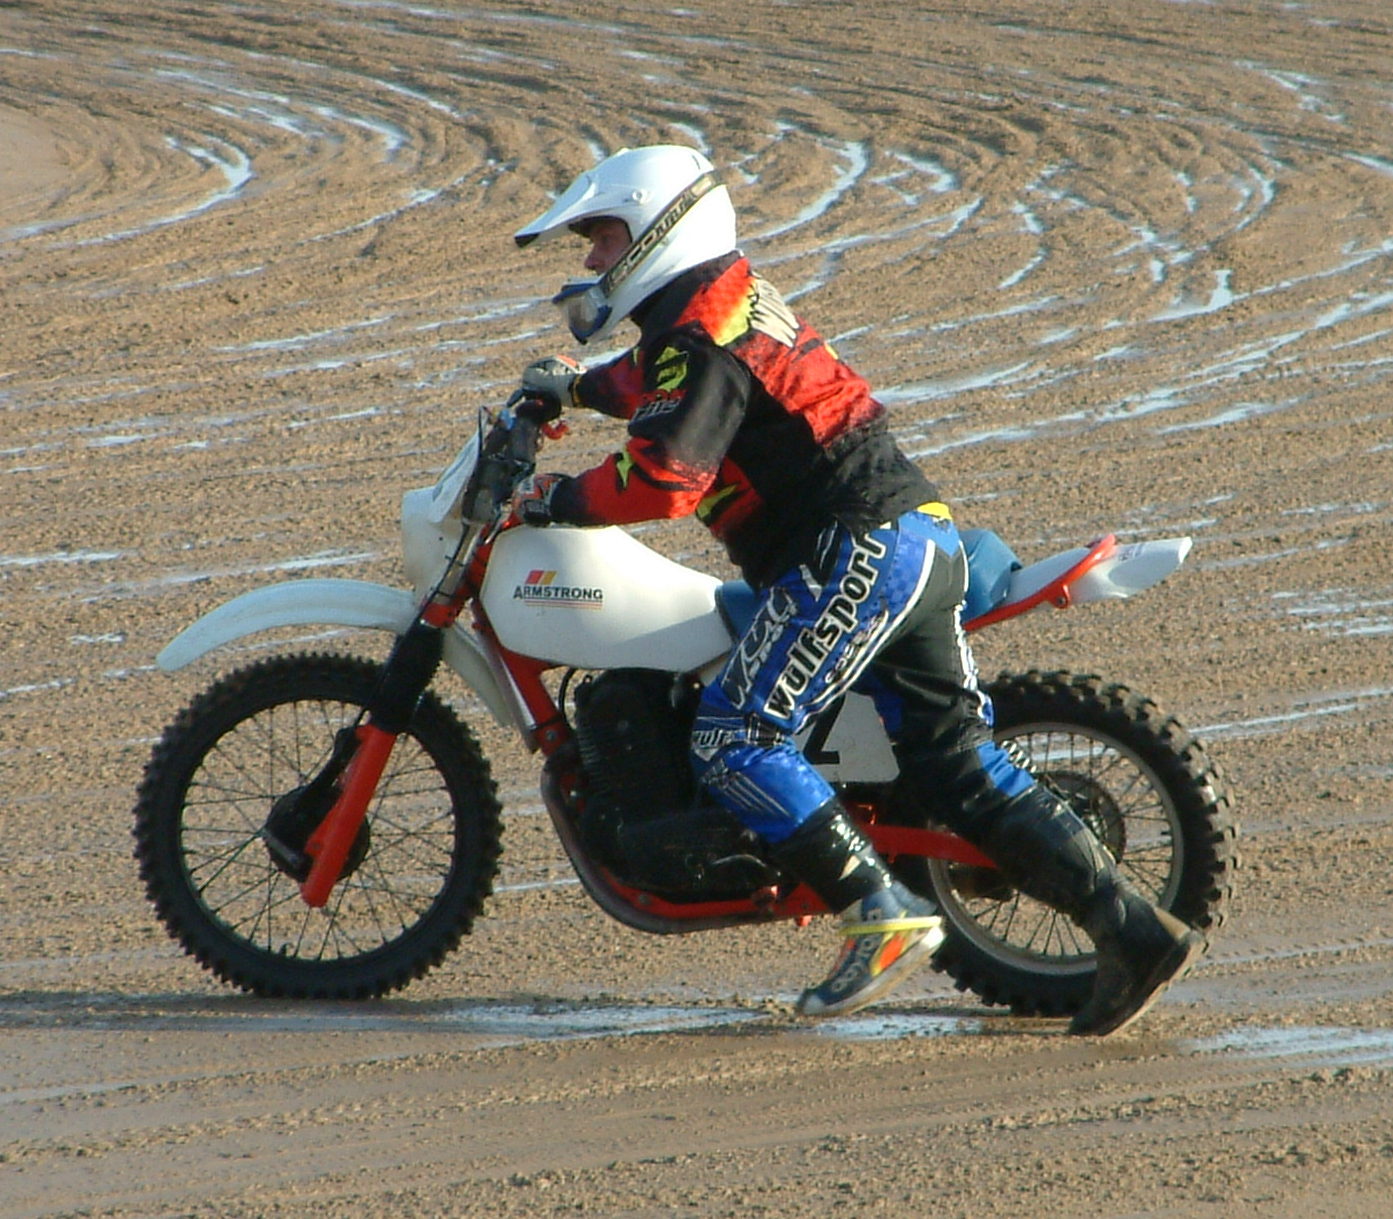 [Mablethorpe+motorcycle+sandracing+27+Jan+2008+248.jpg]